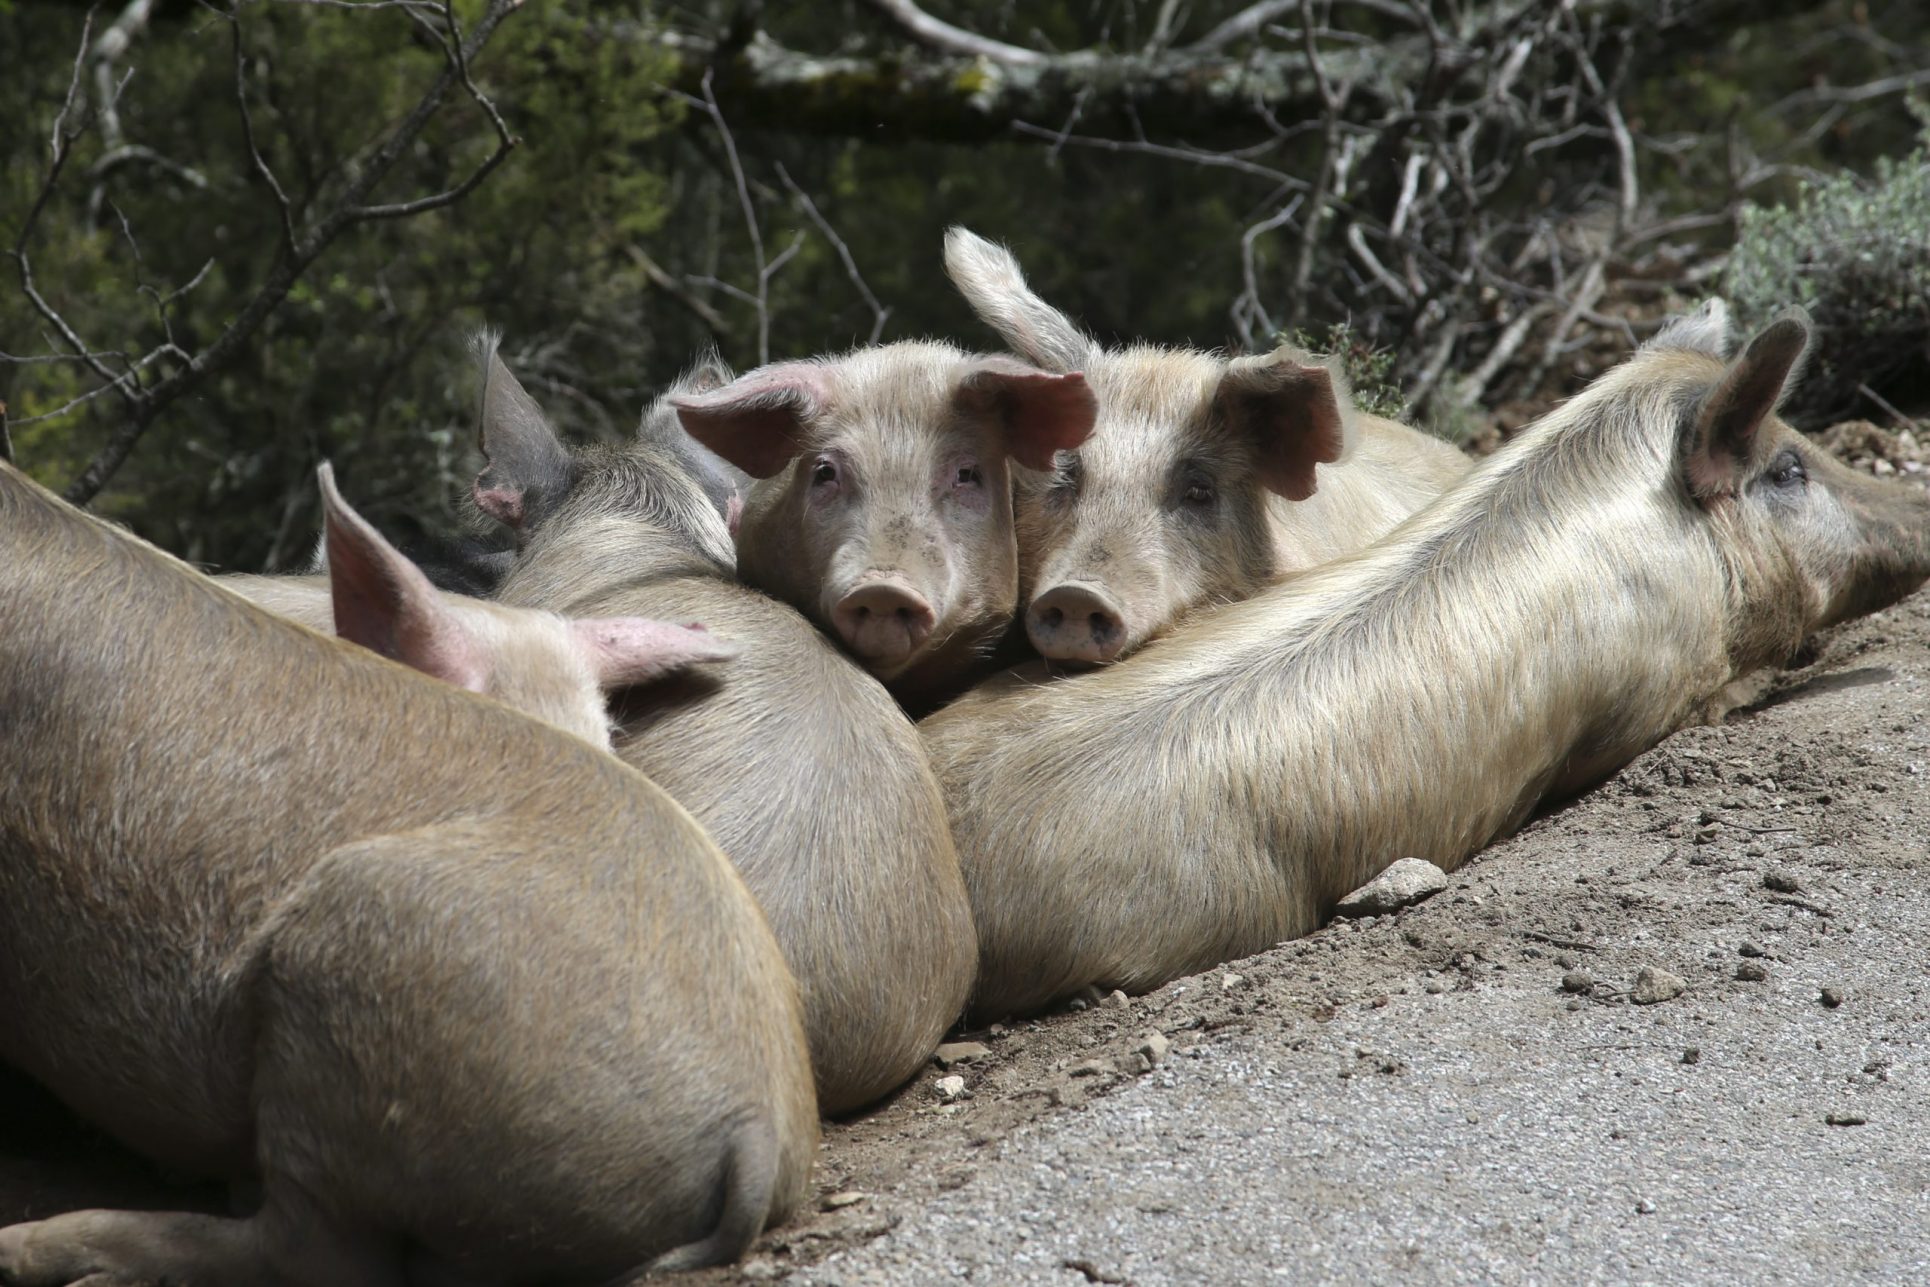 Peste porcina africana ‘aterrizó’ en el continente americano; varios países anuncian medidas